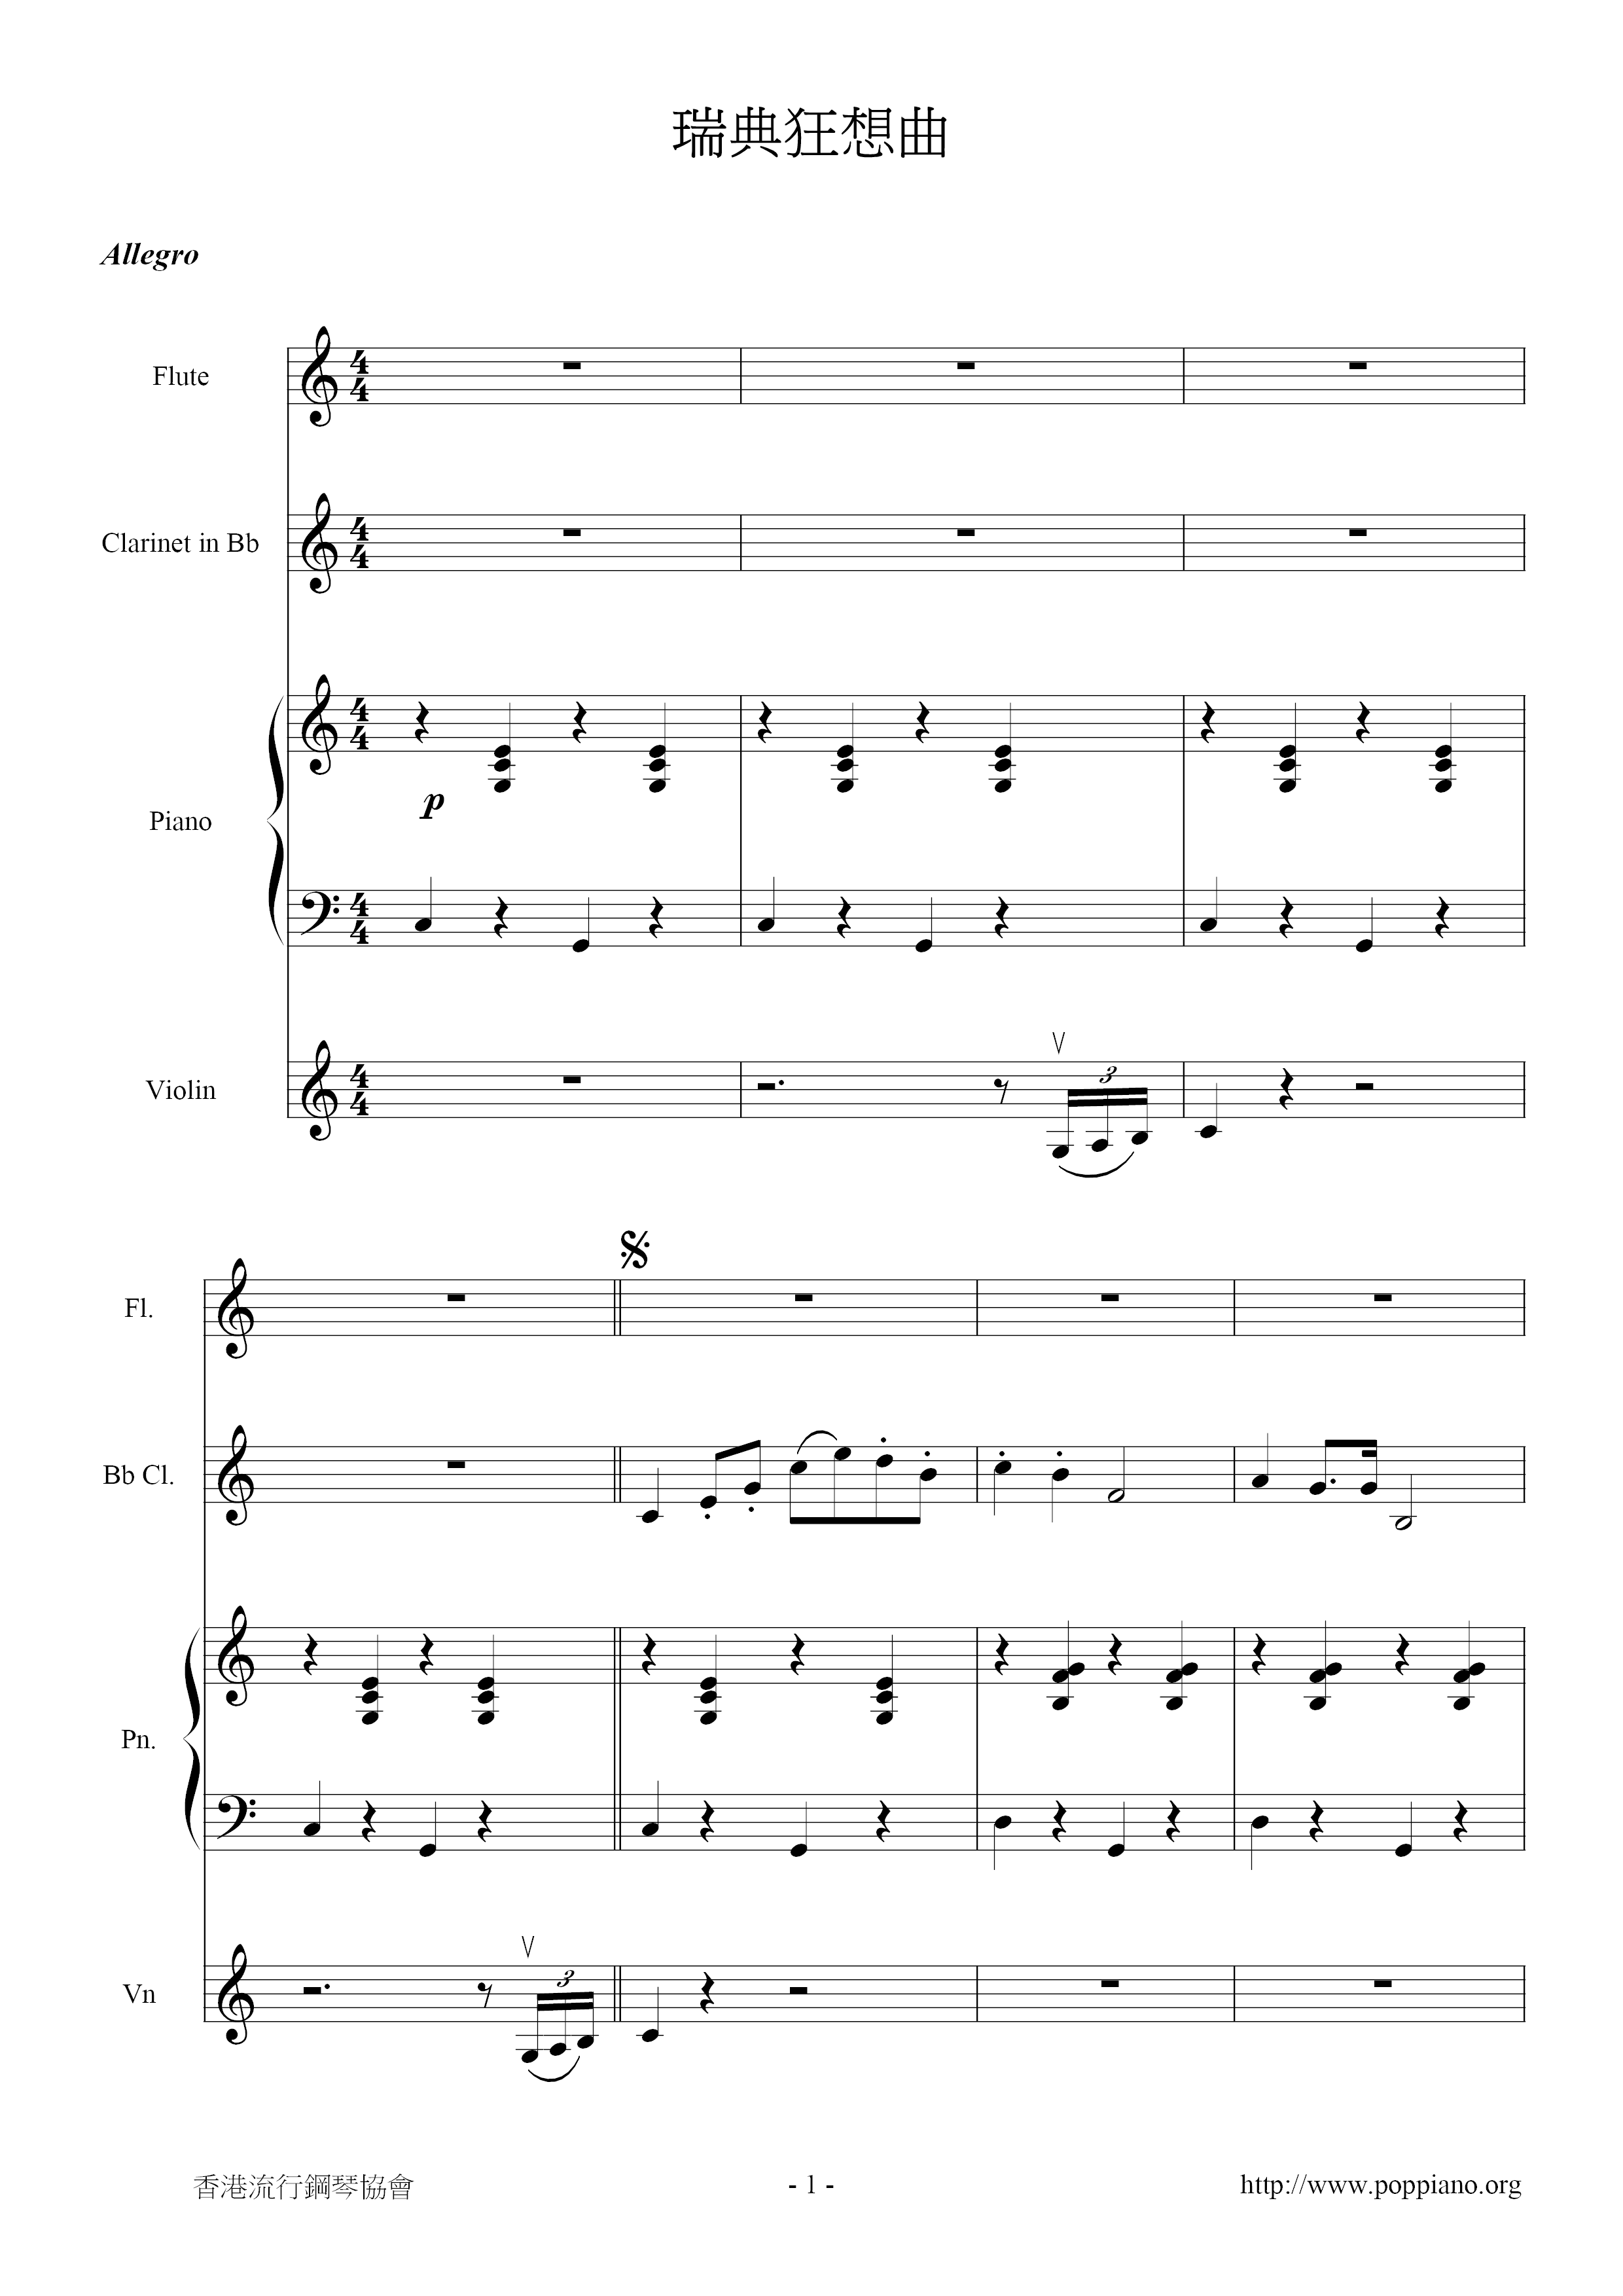 Swedish Rhapsody Score